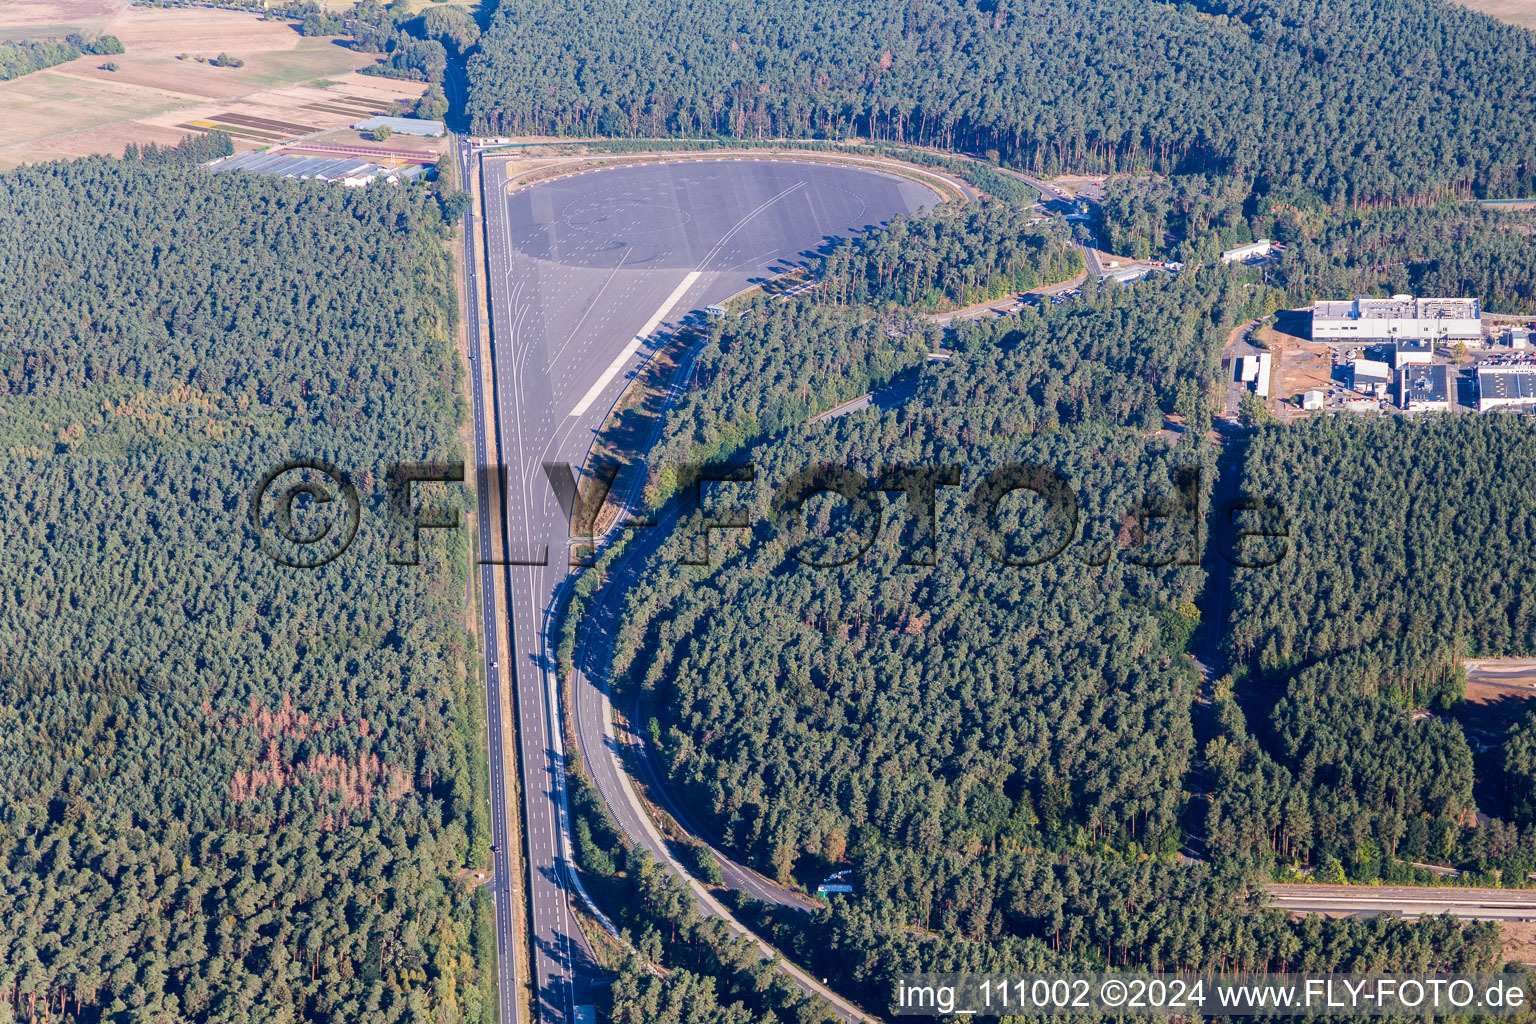 Luftbild von Rodgau, Opel Test Center im Bundesland Hessen, Deutschland